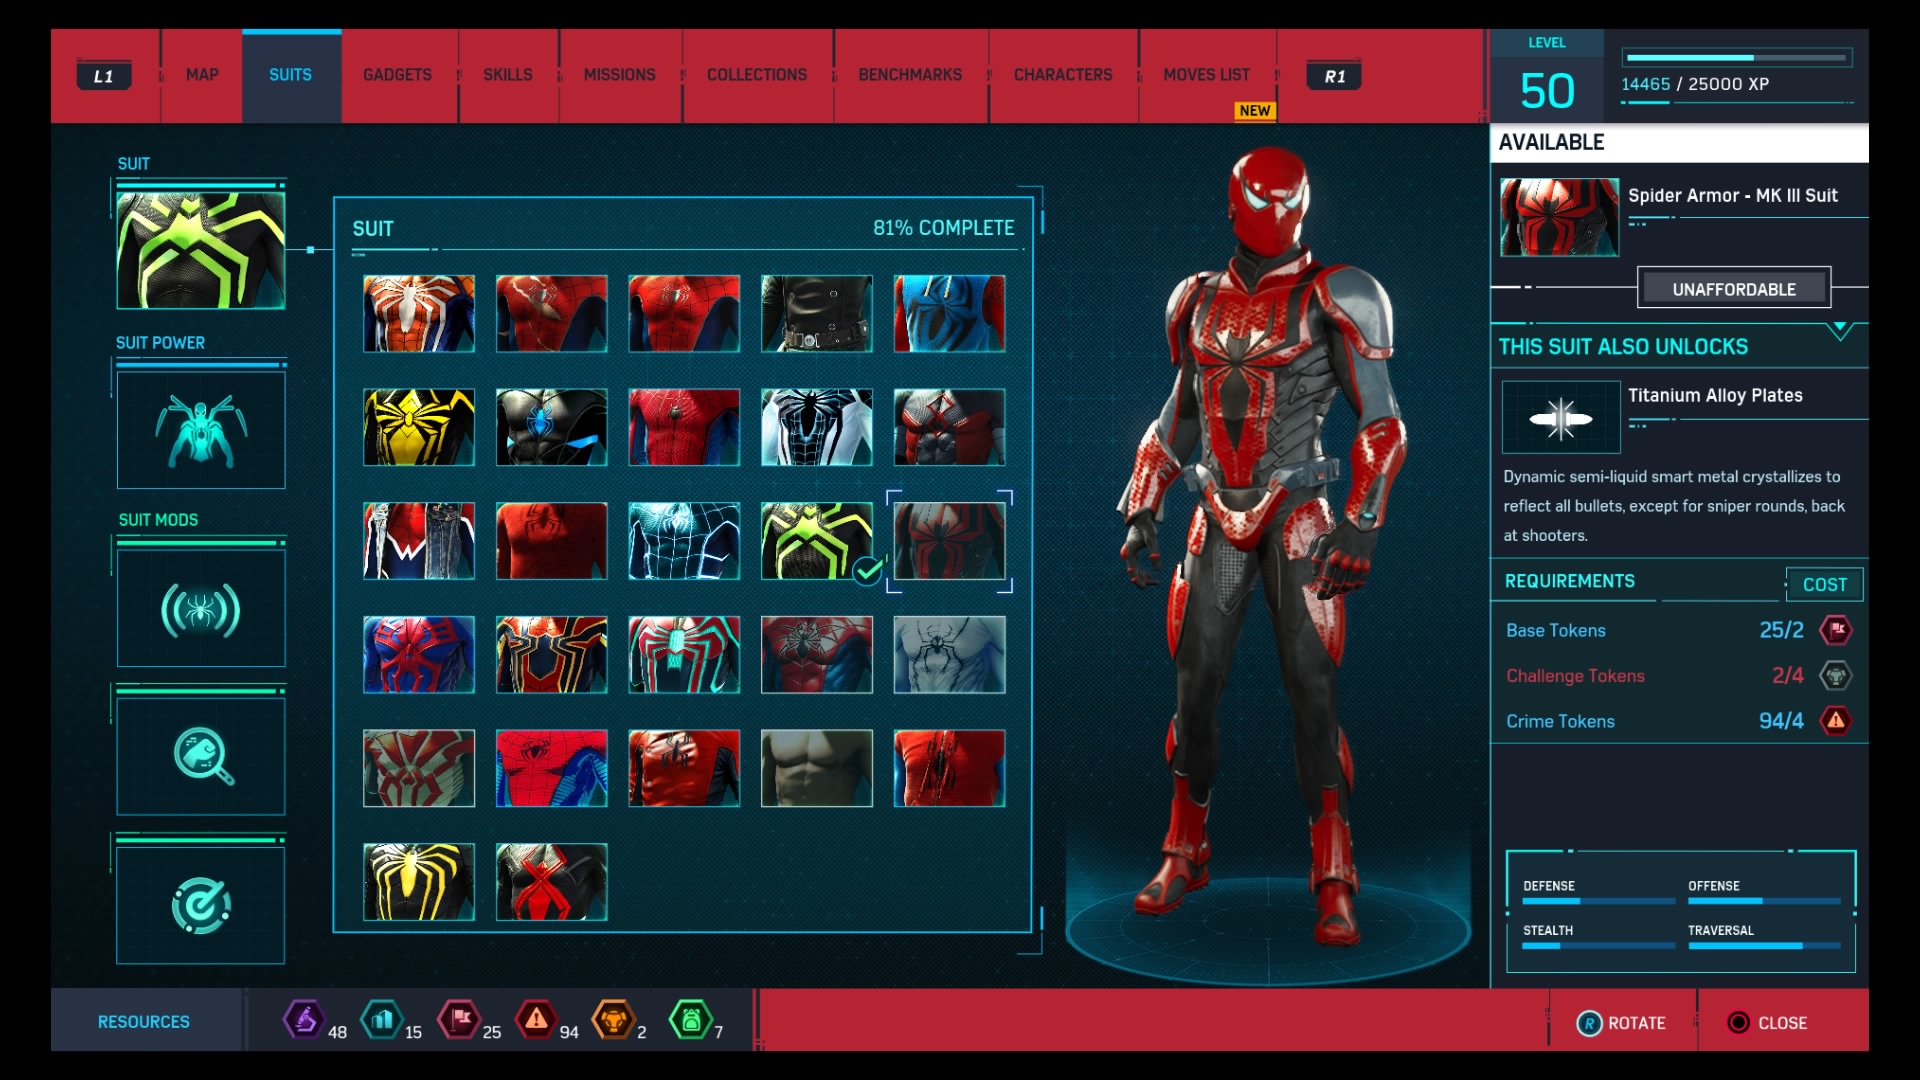 #25 Spider Armor - MK III Suit